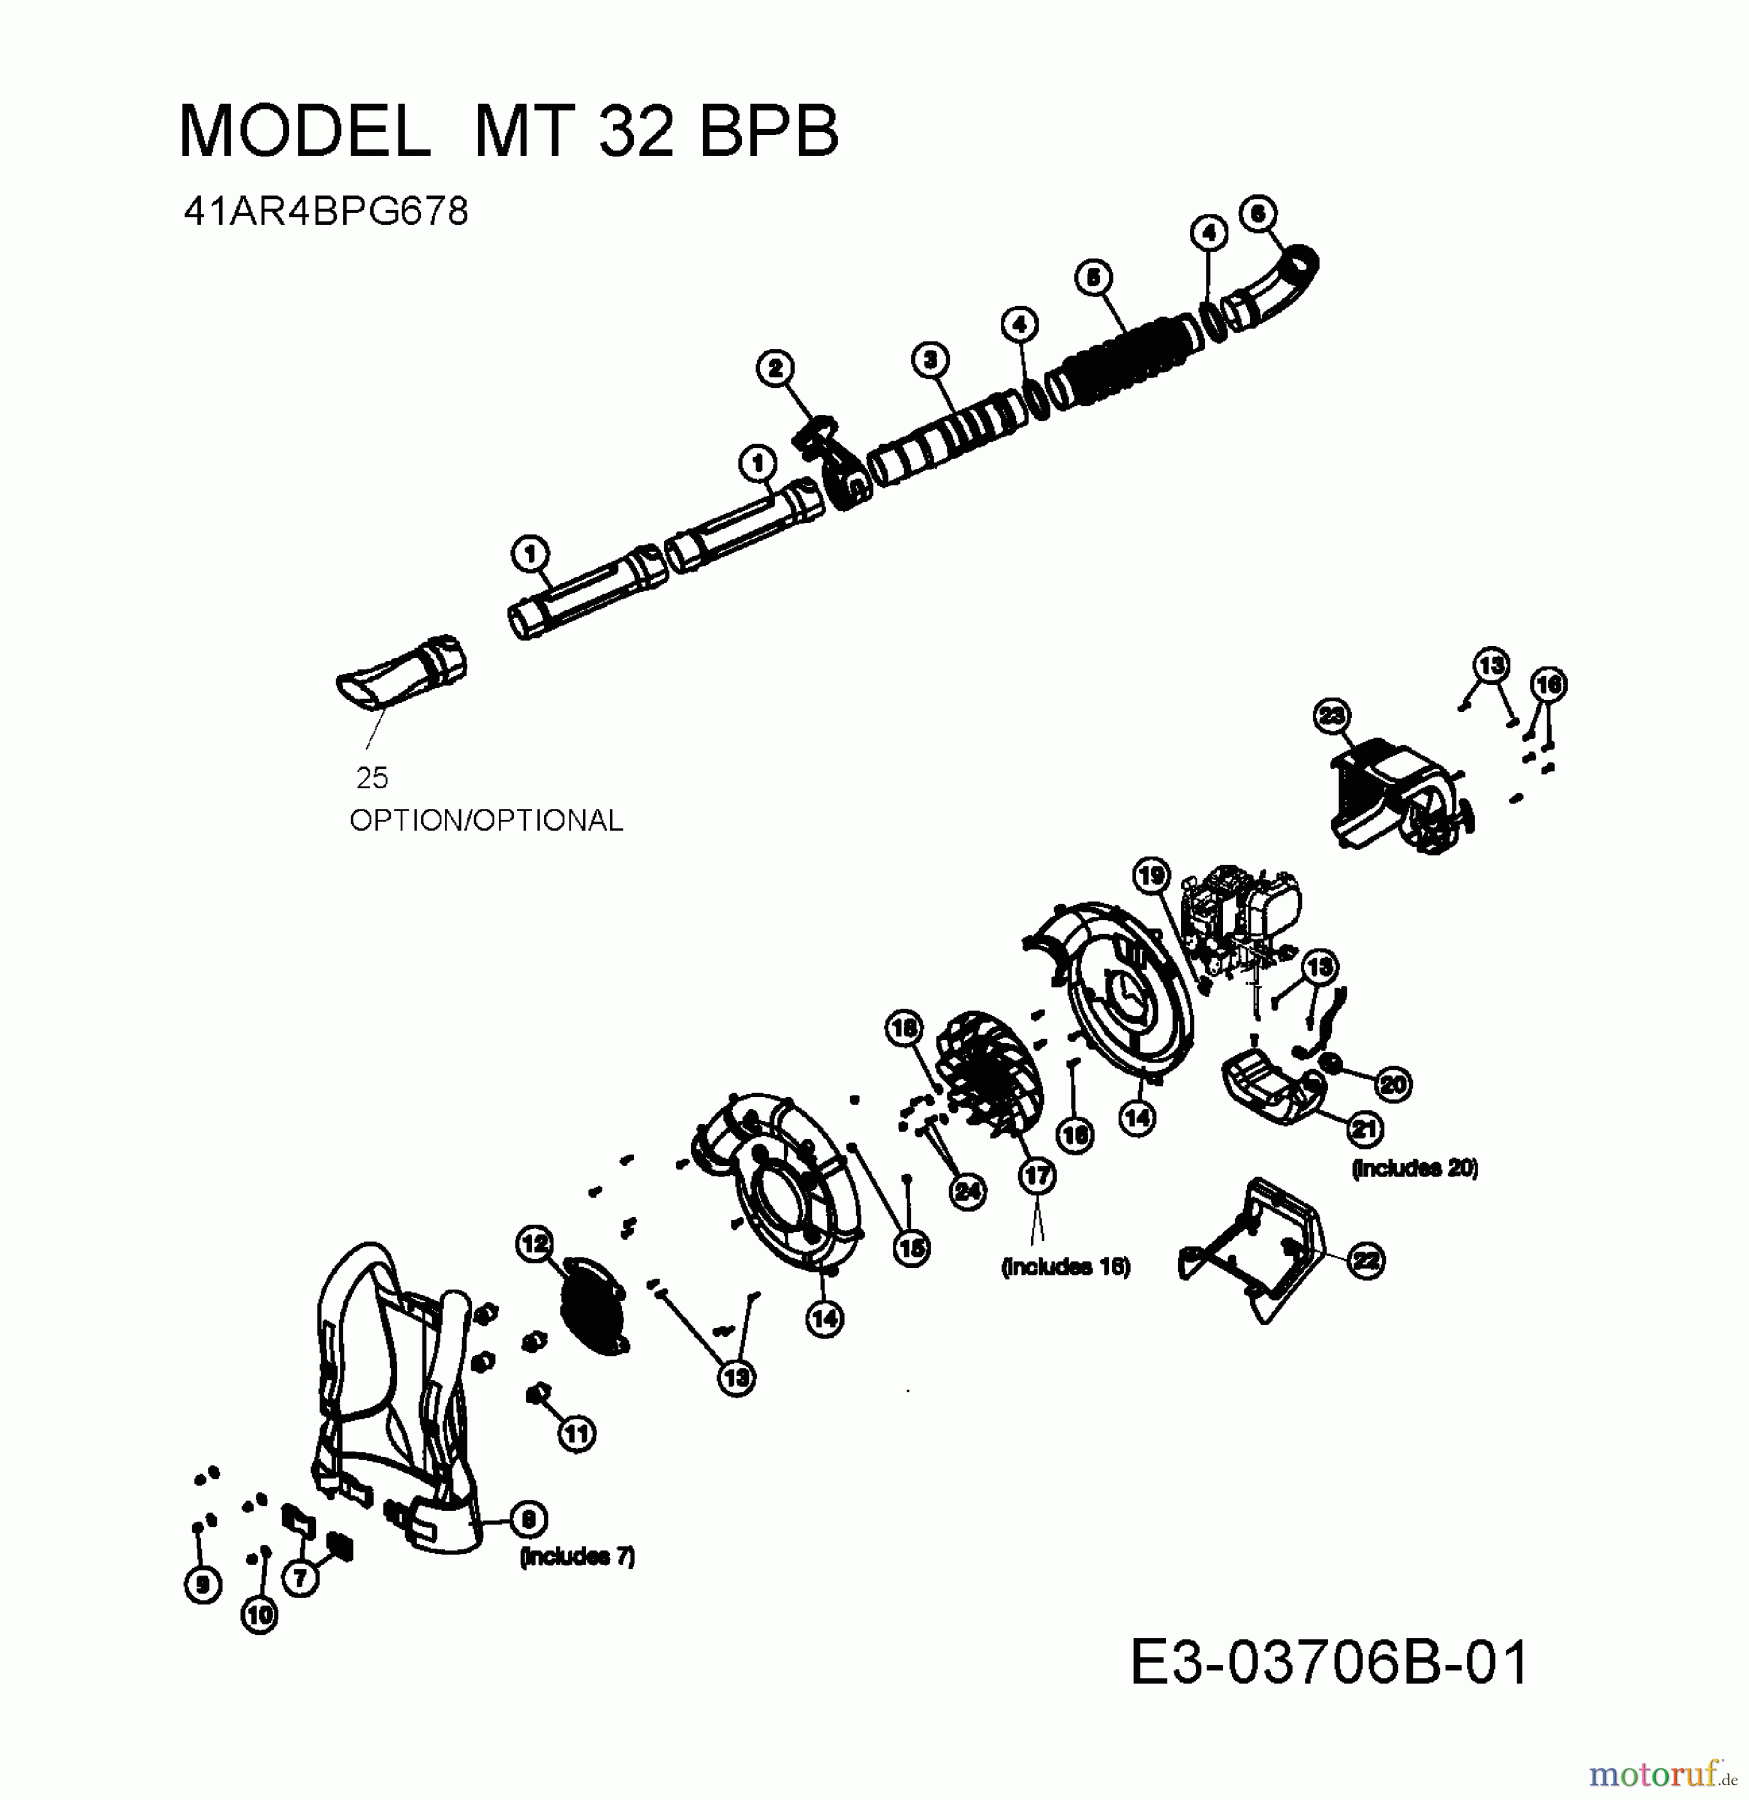  MTD Souffleur de feuille, Aspirateur de feuille MT 32 BPB 41AR4BPG678  (2009) Machine de base